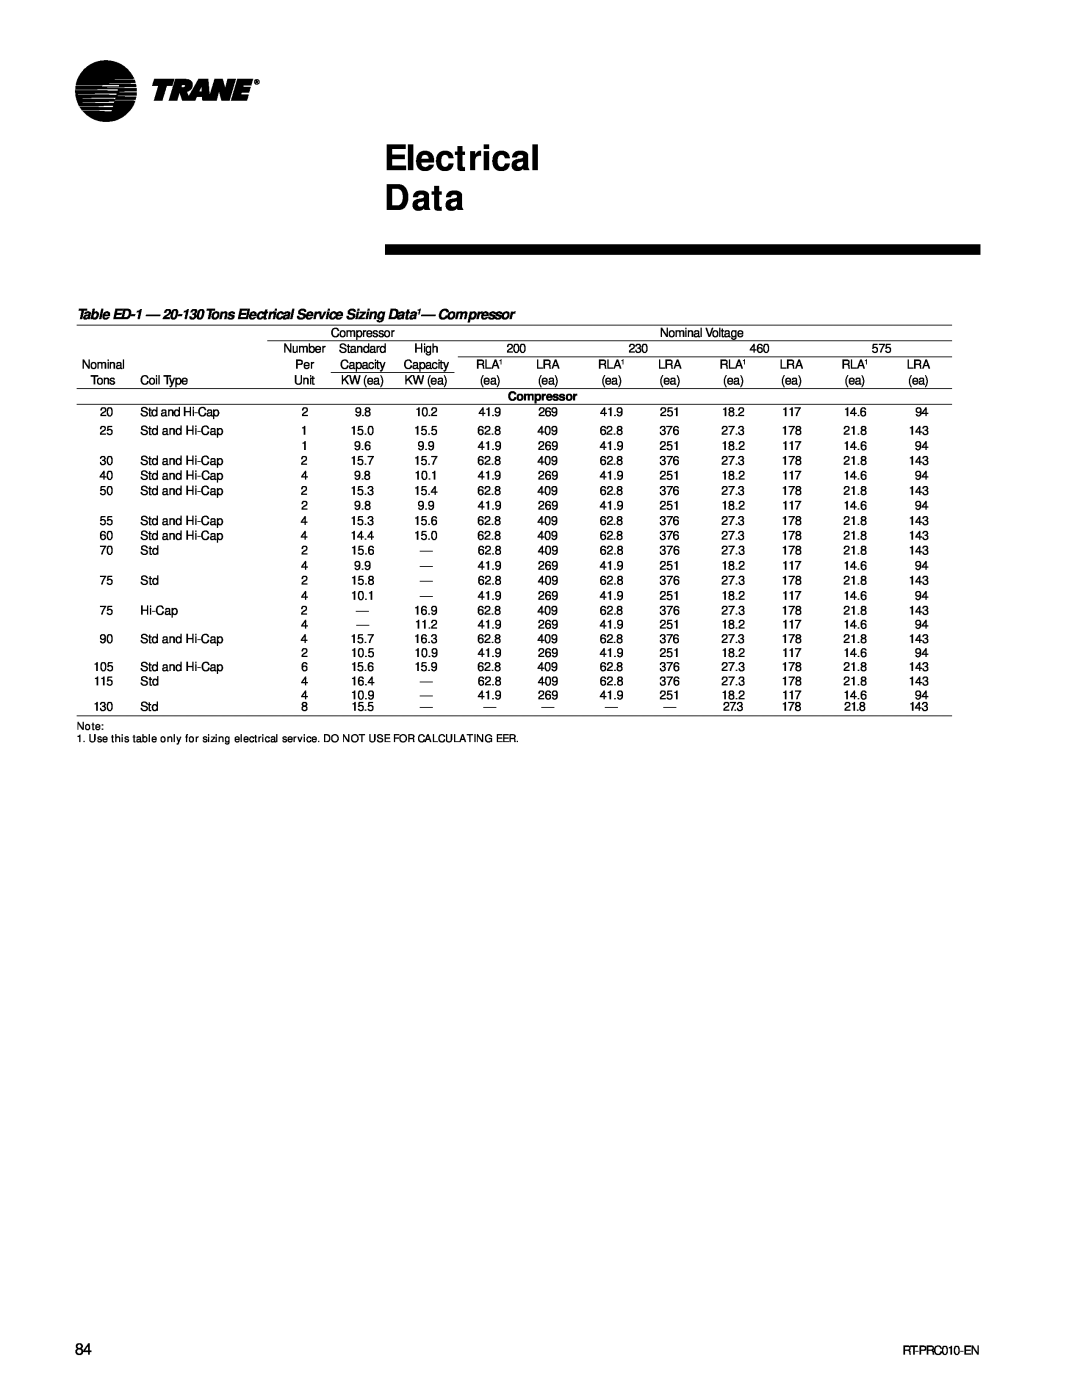 Trane RT-PRC010-EN manual Electrical Data, 15.5 